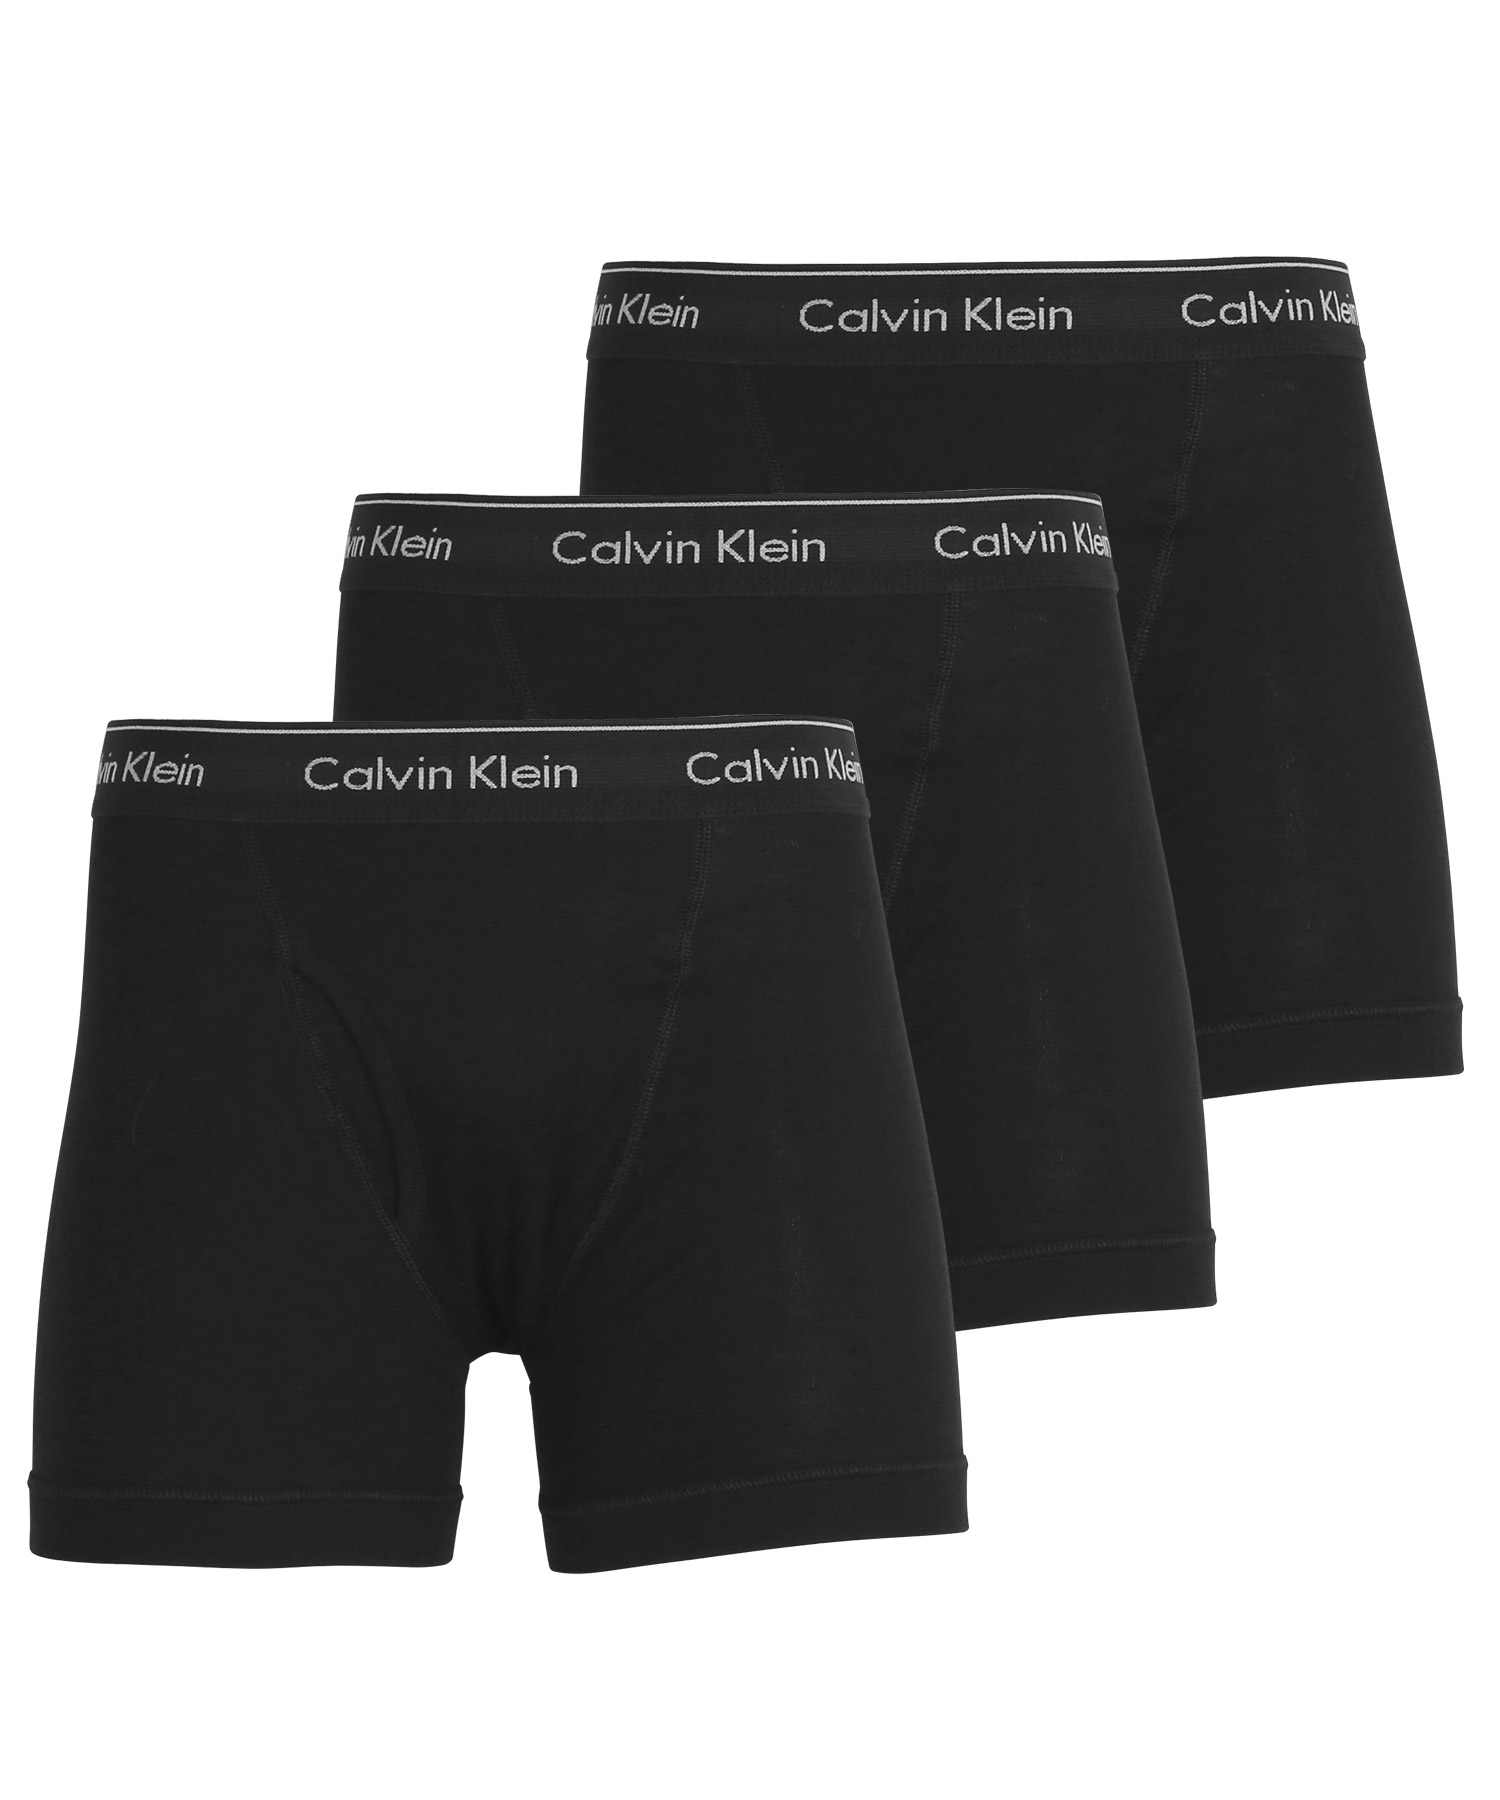 カルバンクライン Calvin Klein ロングボクサーパンツ 3枚セット